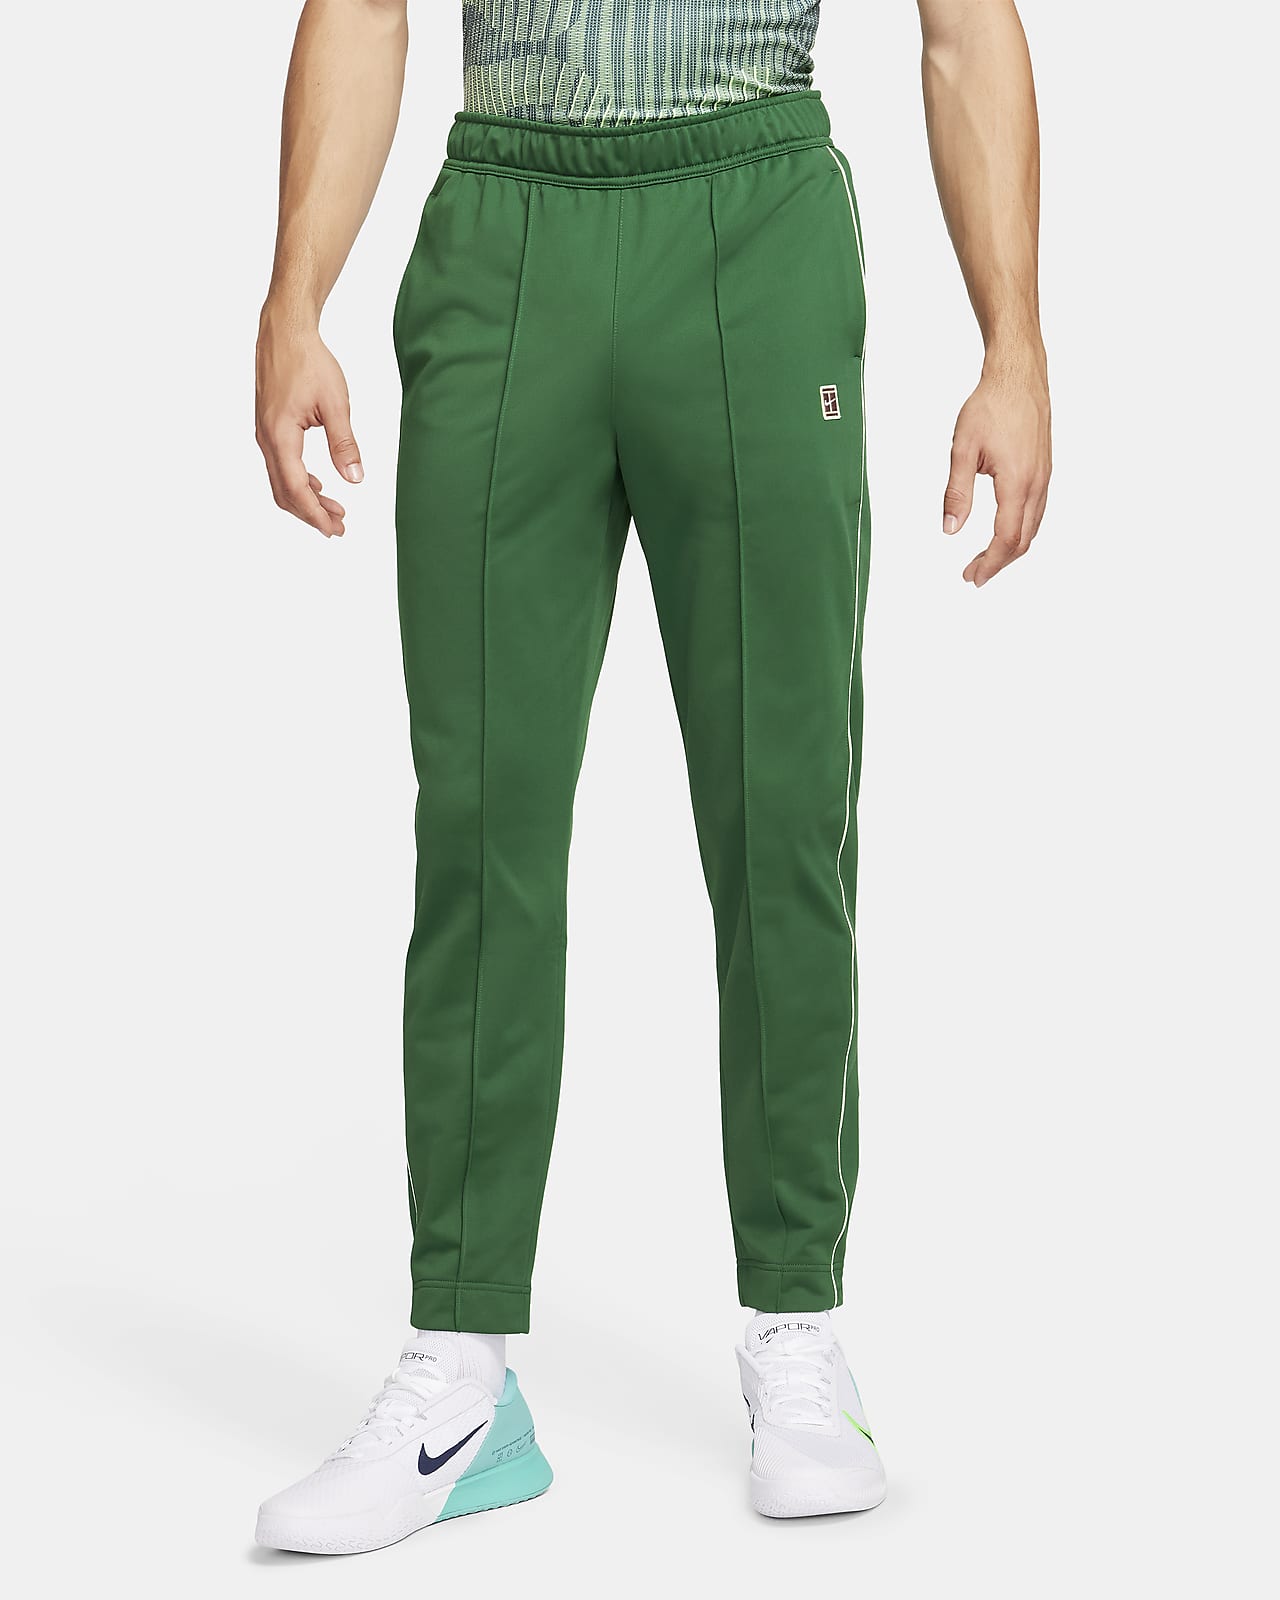 Pantaloni da tennis NikeCourt - Uomo